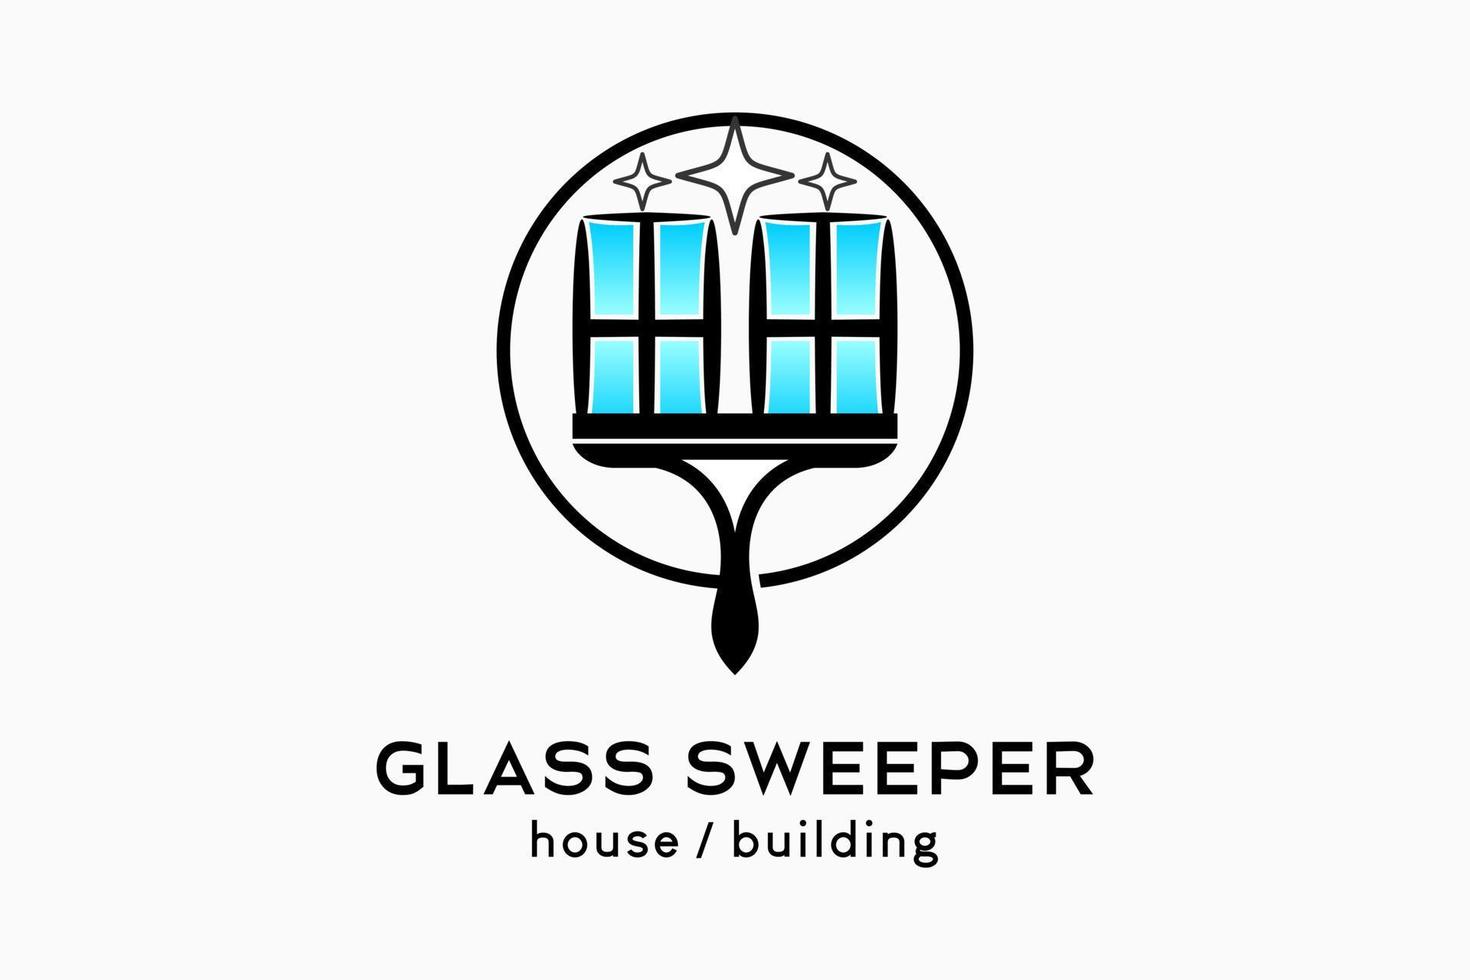 création de logo de nettoyant pour vitres ou de balayeuse de vitres, silhouette d'un nettoyant pour vitres en caoutchouc combiné à une icône de fenêtre dans un cercle vecteur